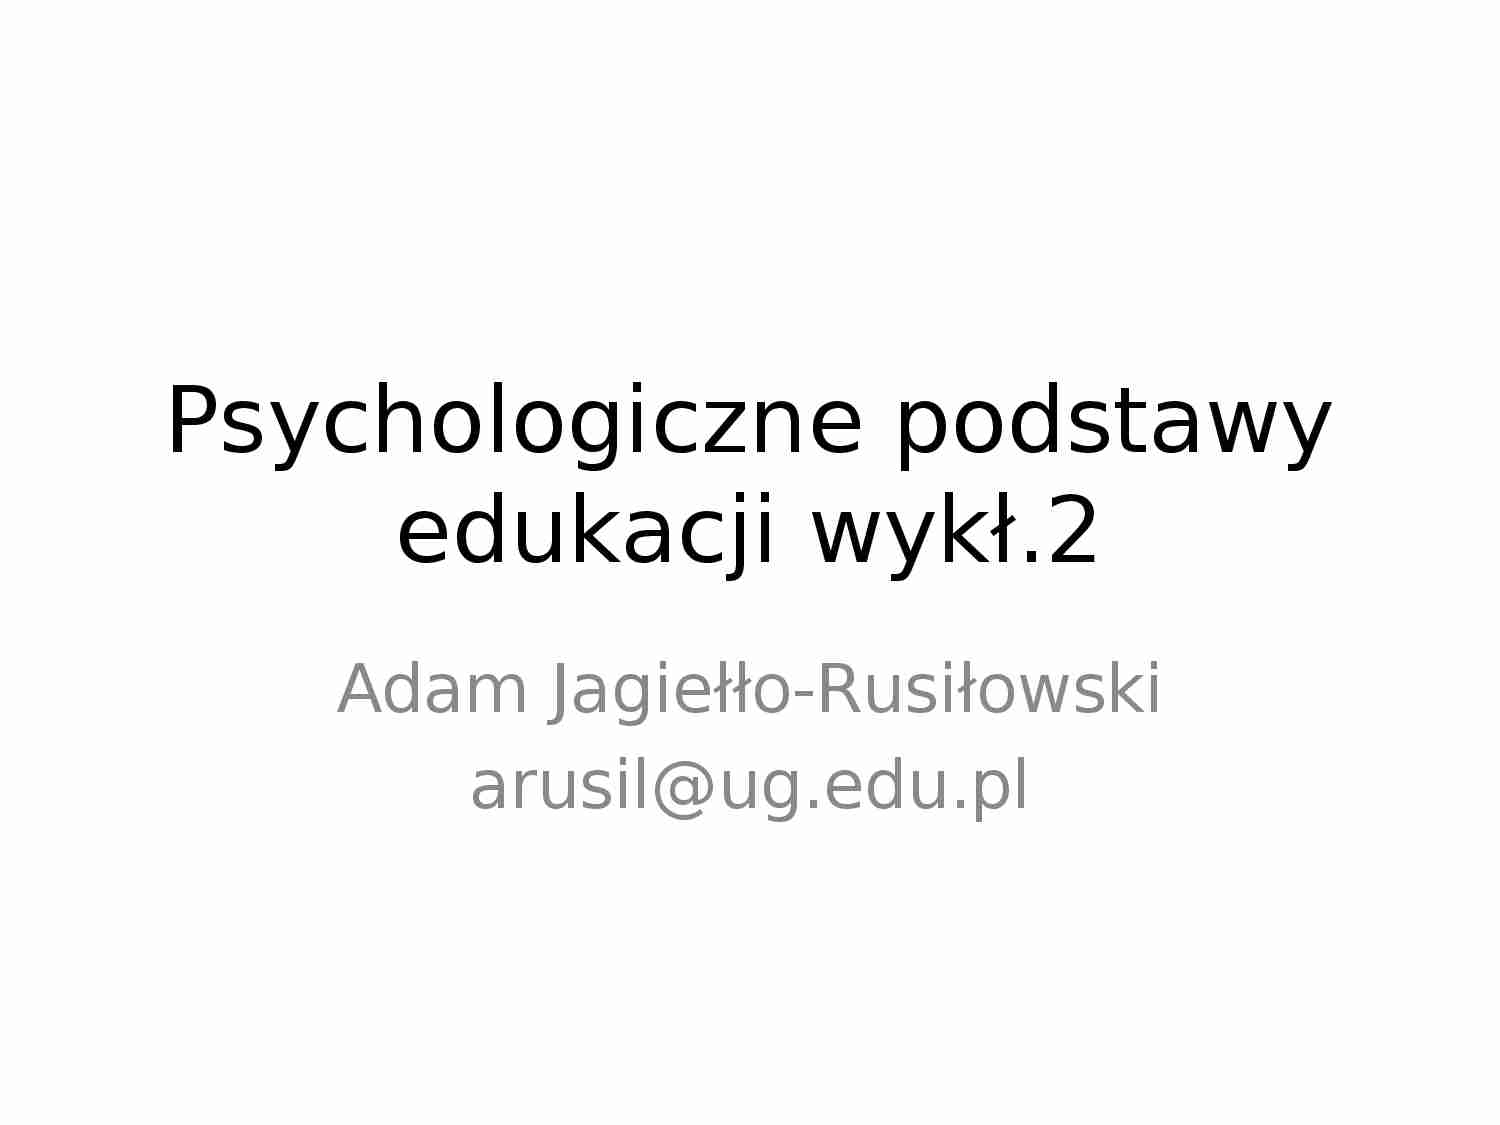 Psychologiczne podstawy edukacji - wykład 2 - strona 1